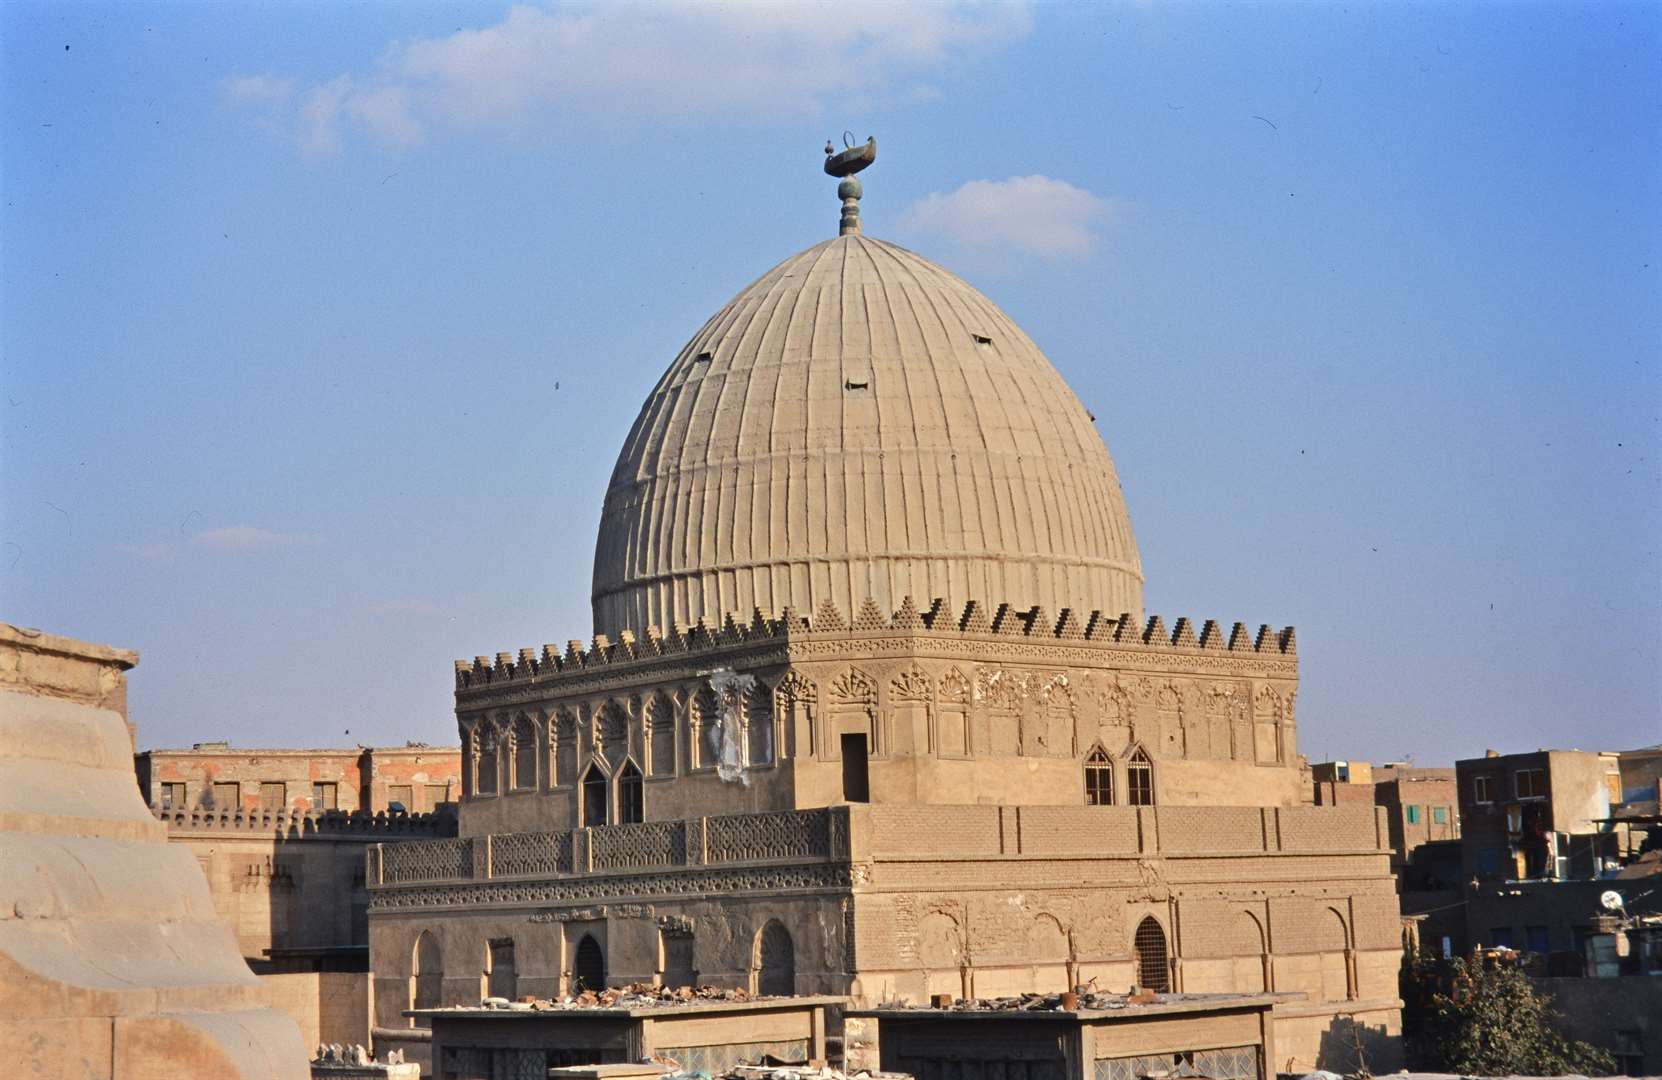 الخط الكوفي يزين نوافذ قبة الإمام الشافعي الأكبر في العالم الإسلامي